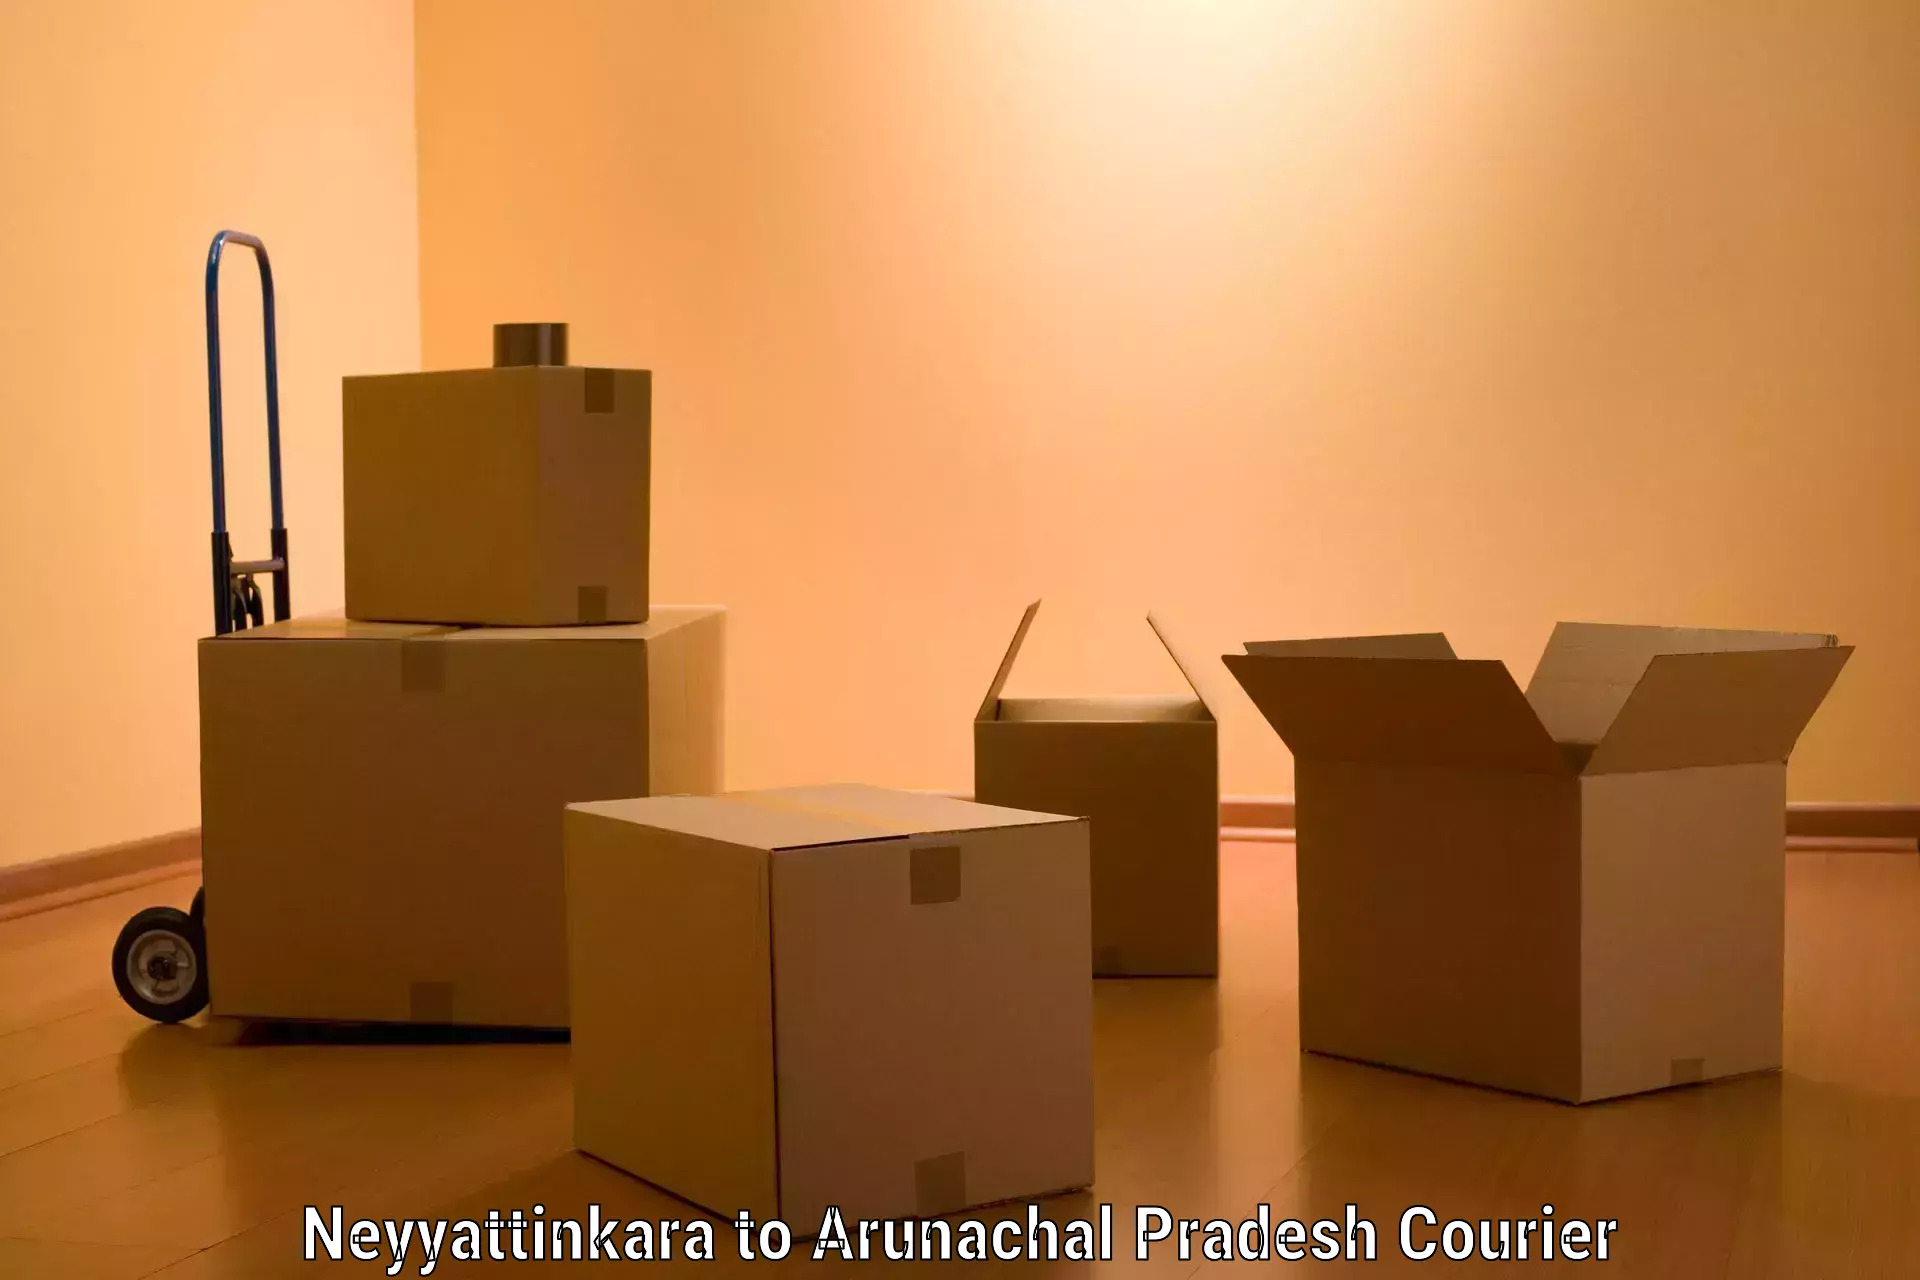 Furniture delivery service Neyyattinkara to Arunachal Pradesh